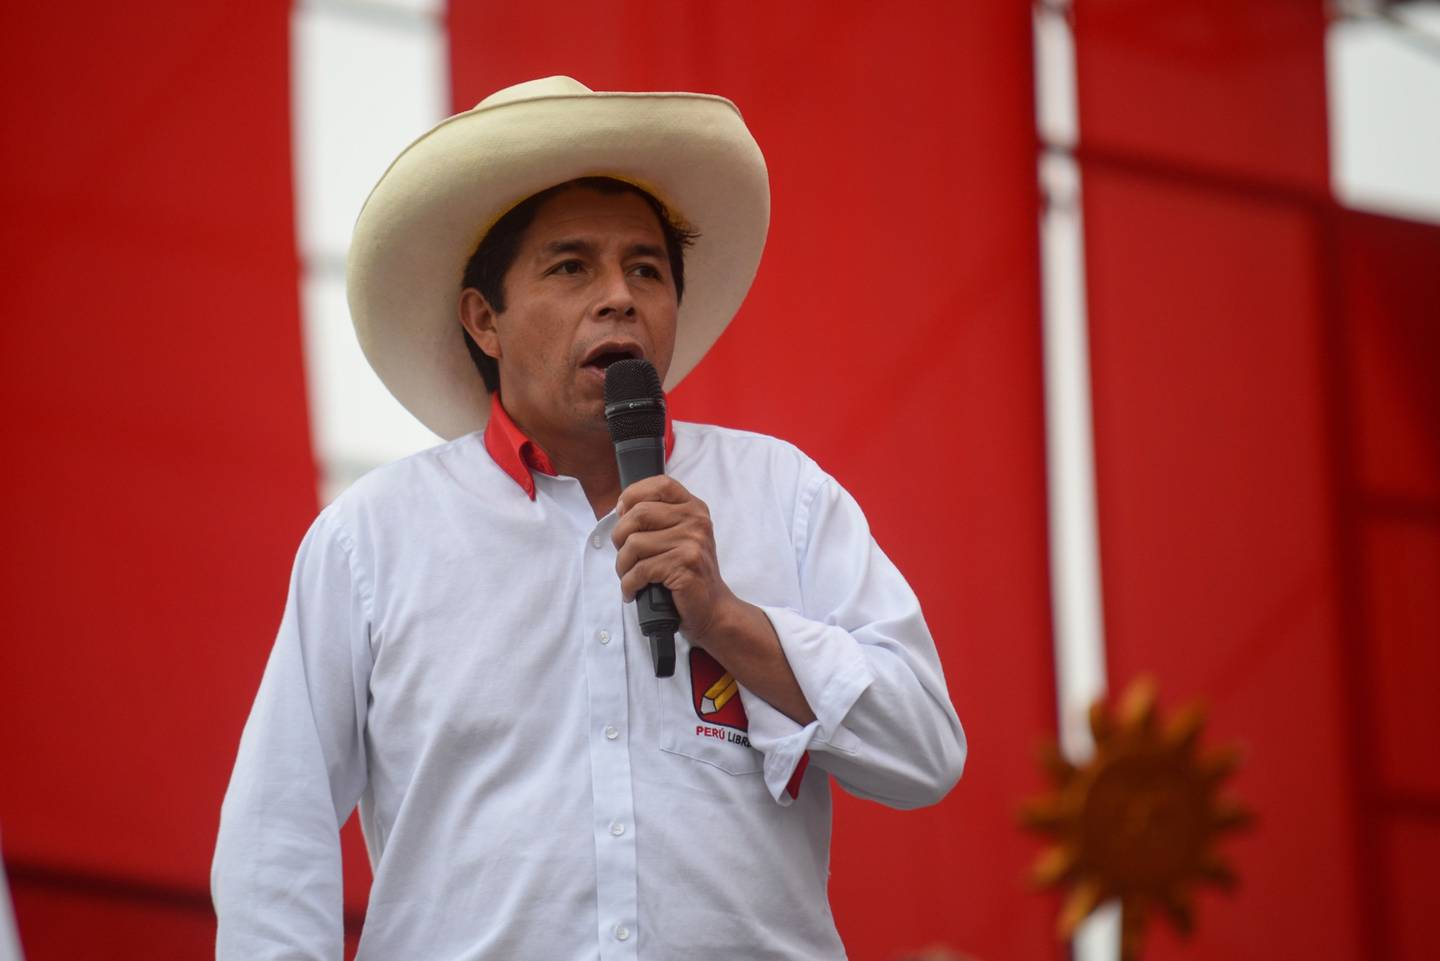 El presidente Pedro Castillo mantiene una relación tensa con el sector minerodfd